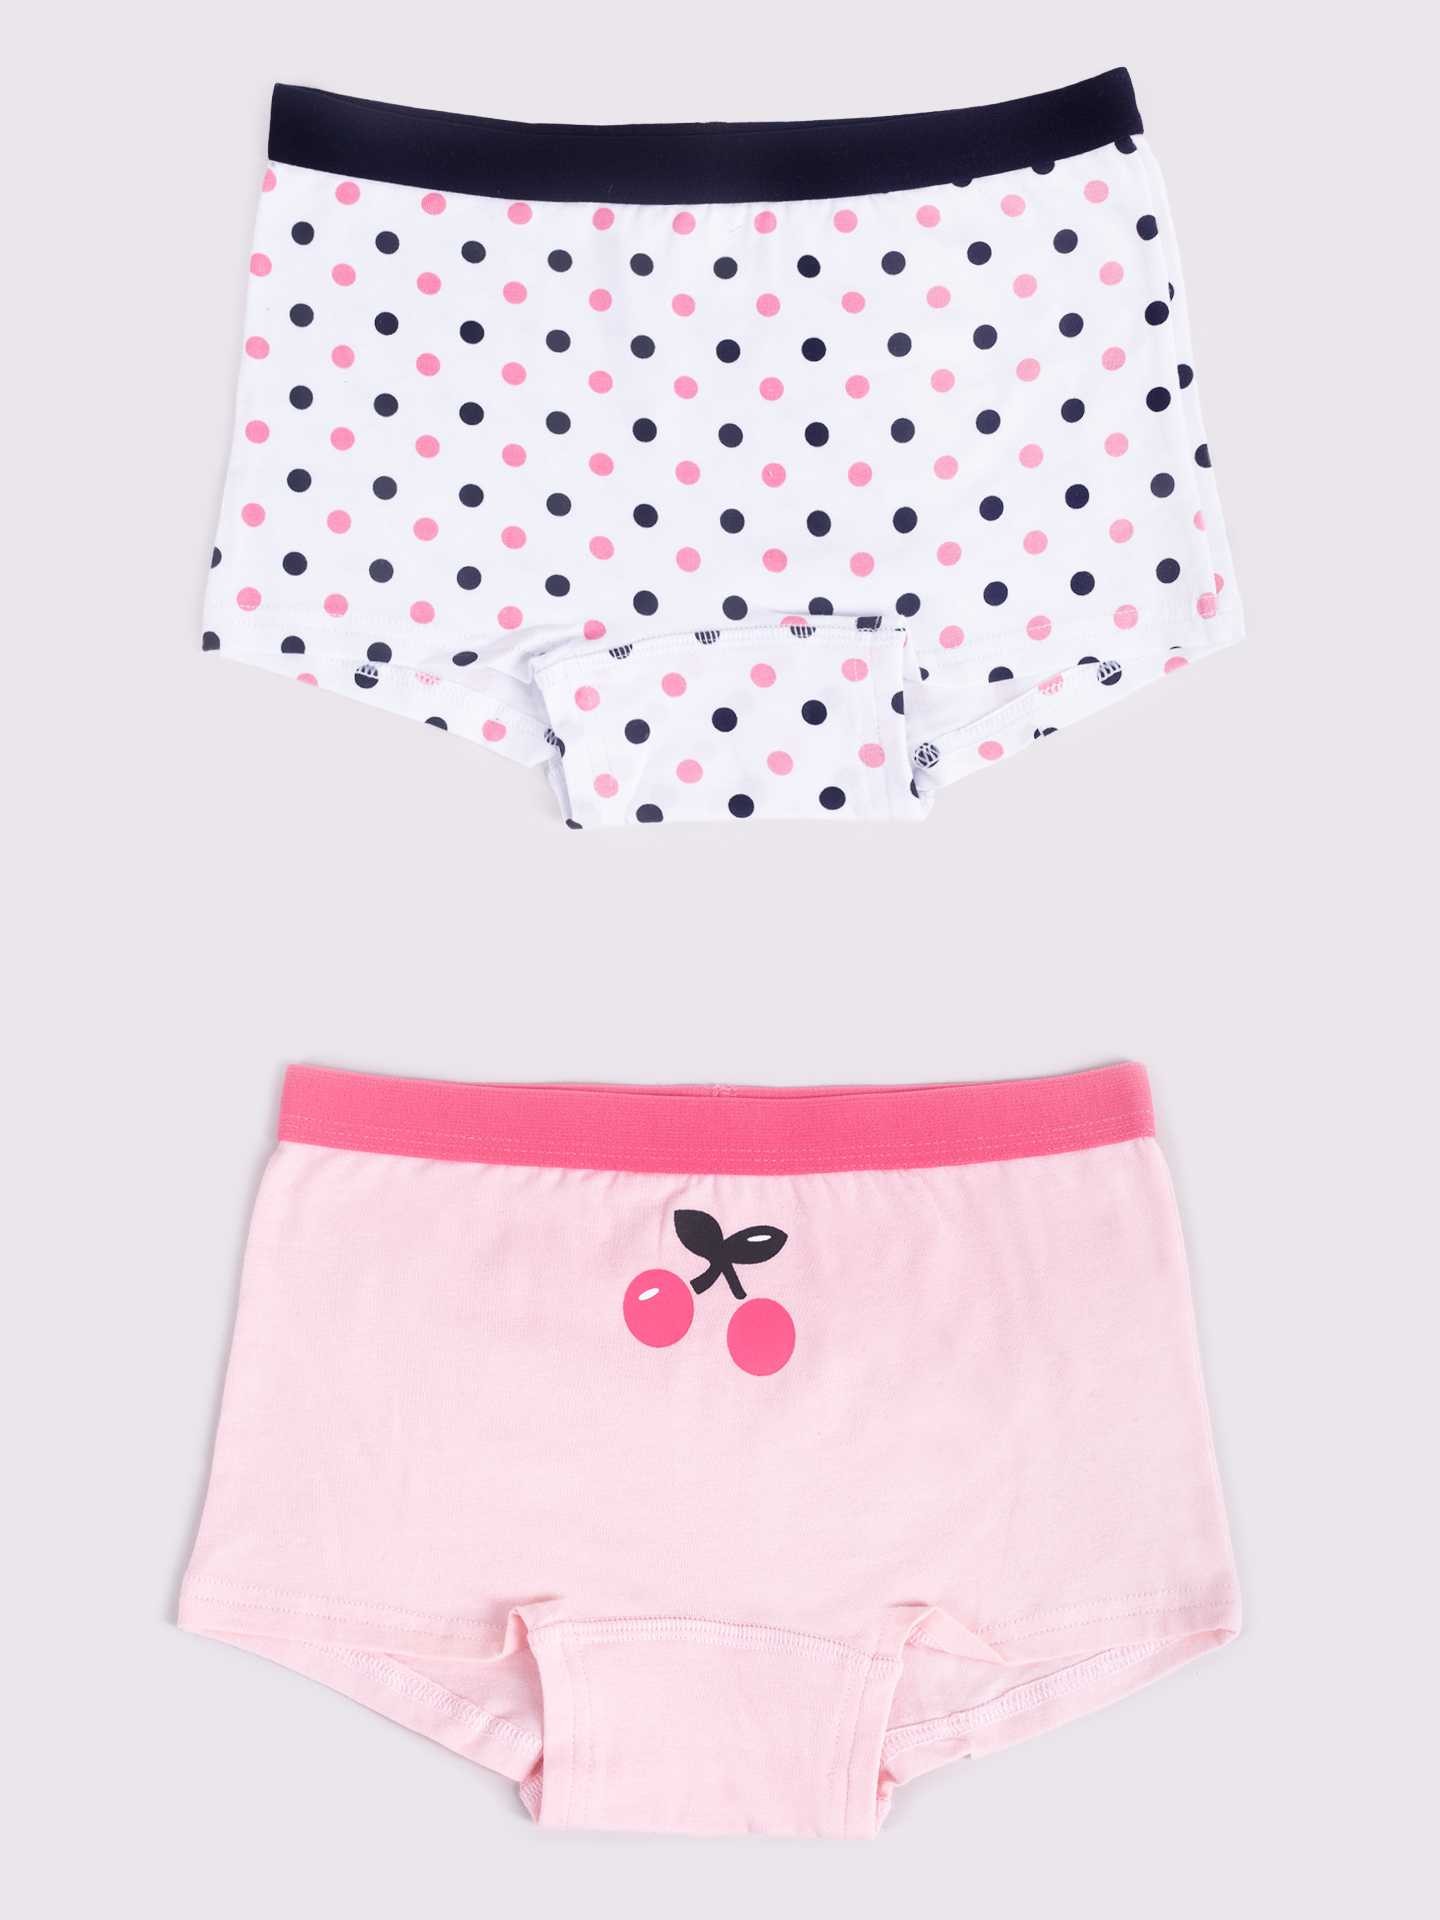 Levně Yoclub Kids's Cotton Girls' Boxer Briefs Underwear 2-Pack BMA-0002G-AA30